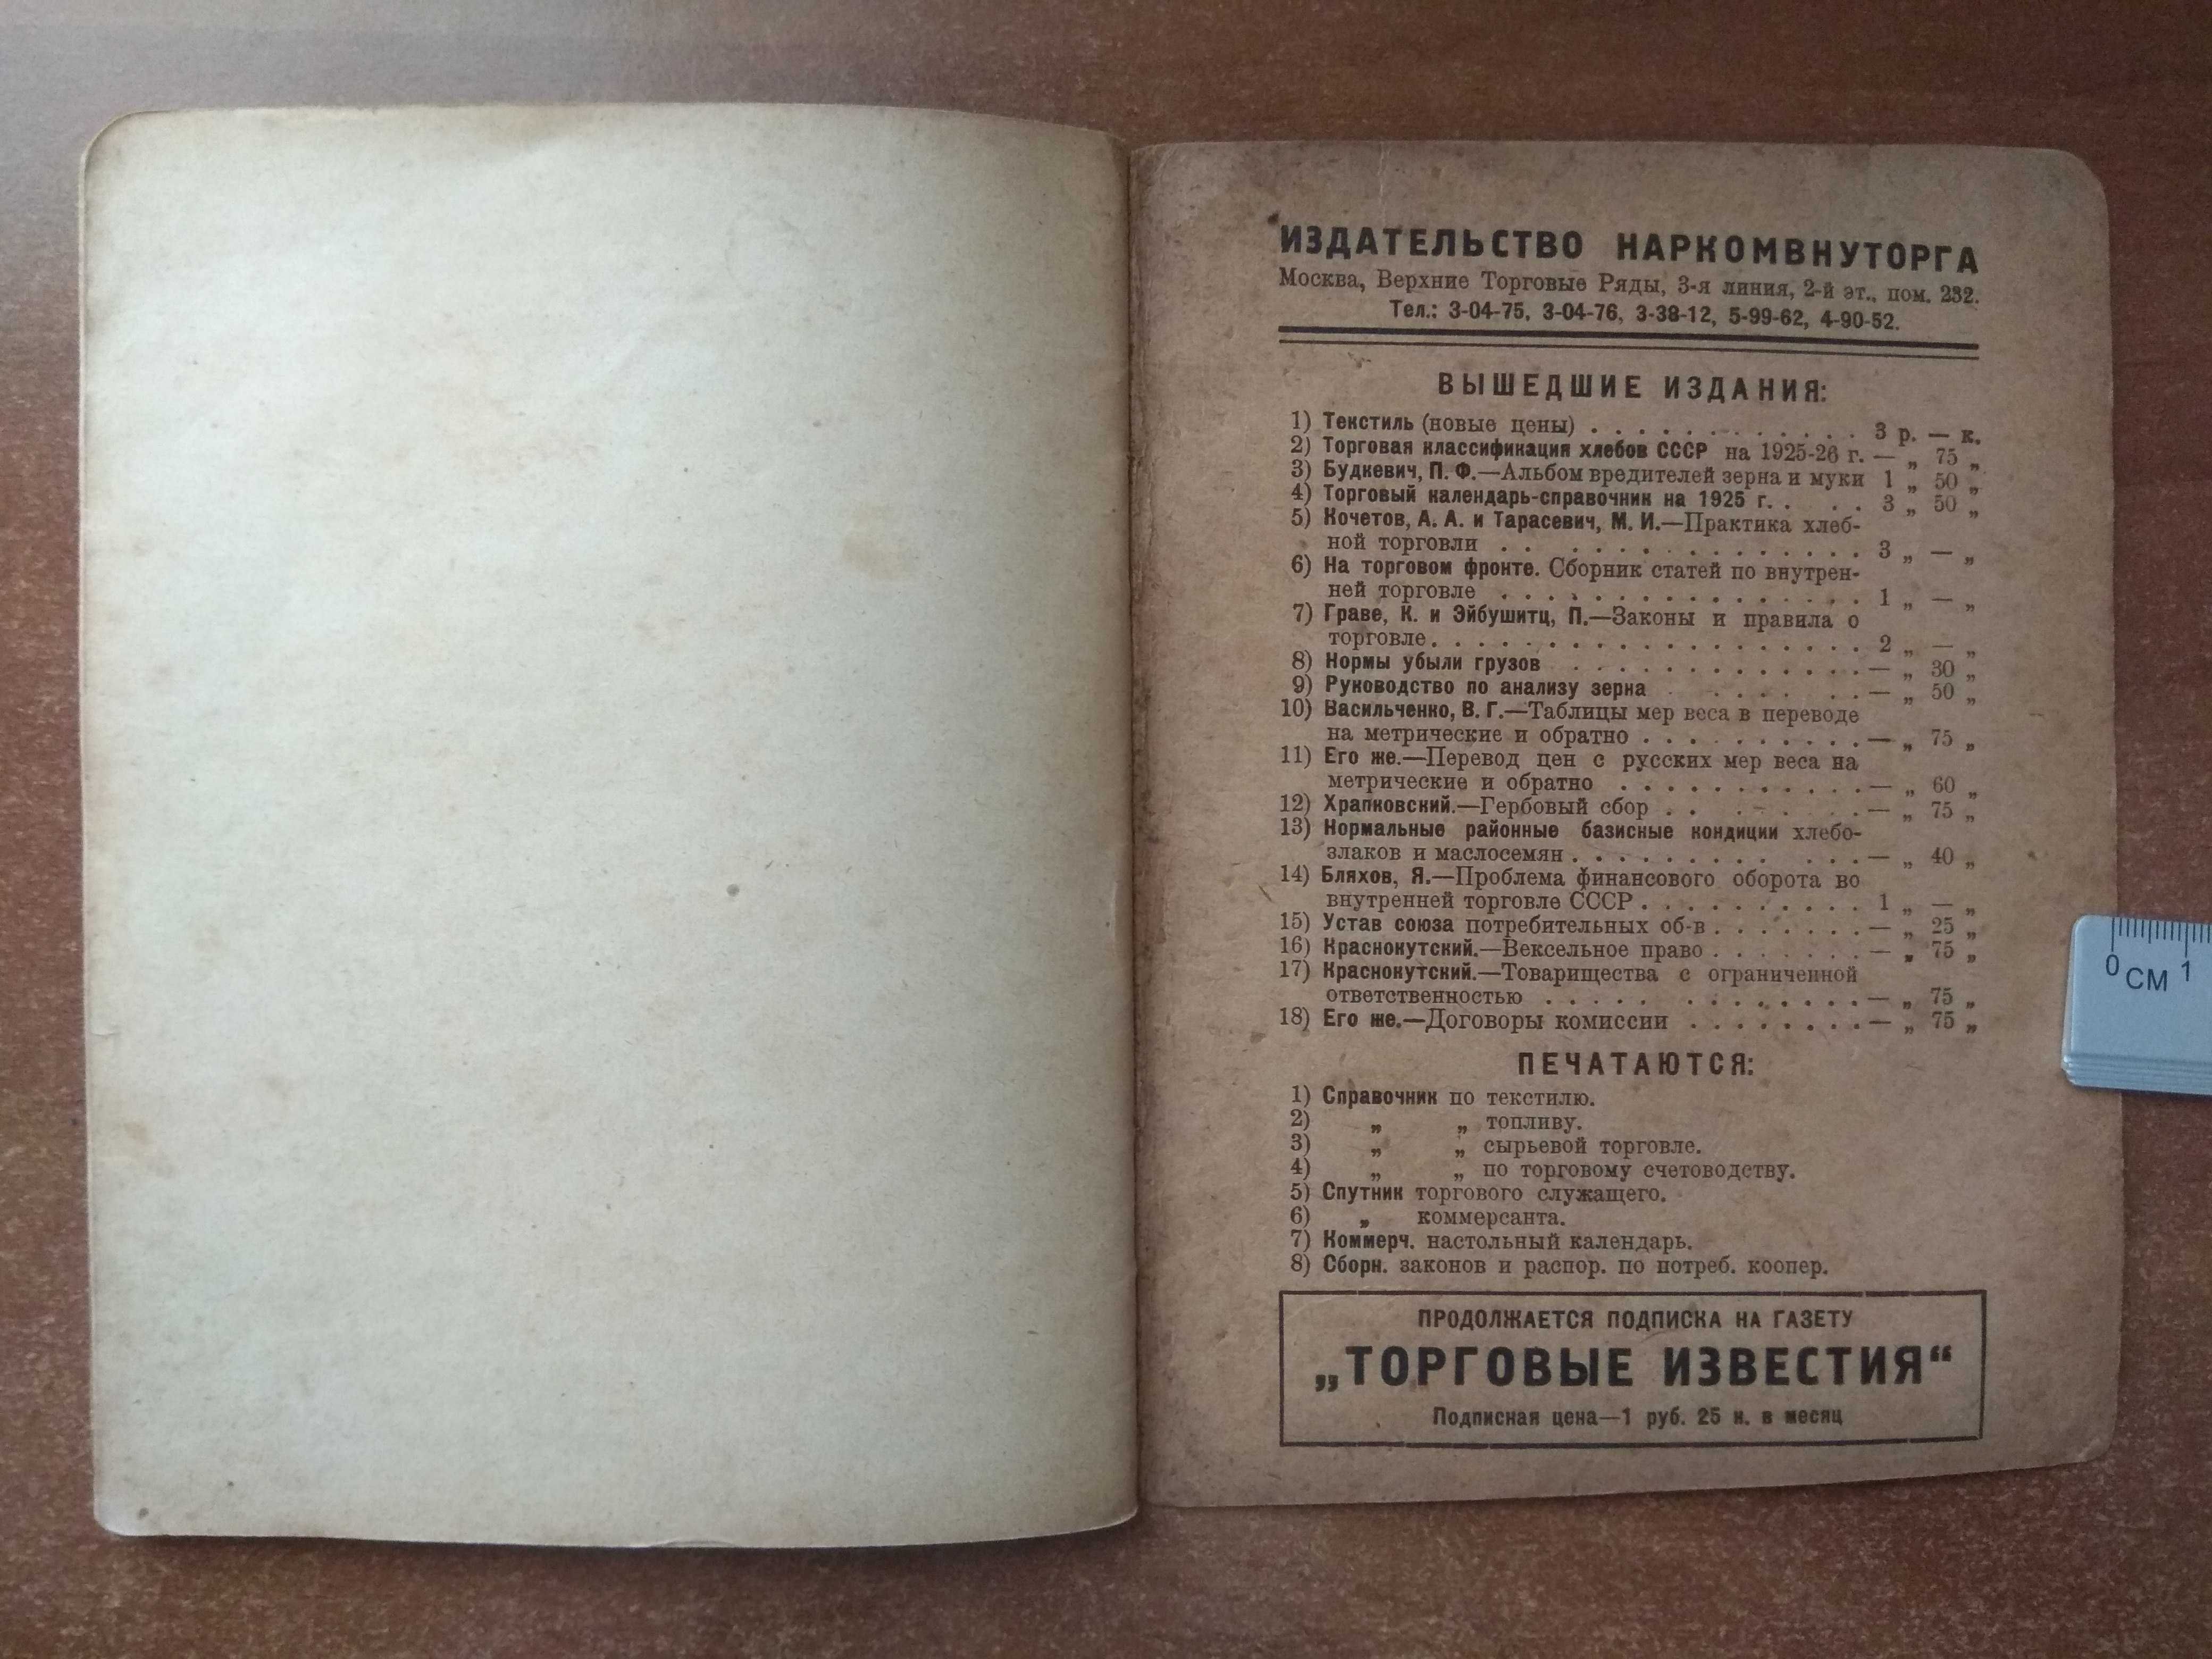 1926 г. Таблицы для перевода русских мер веса